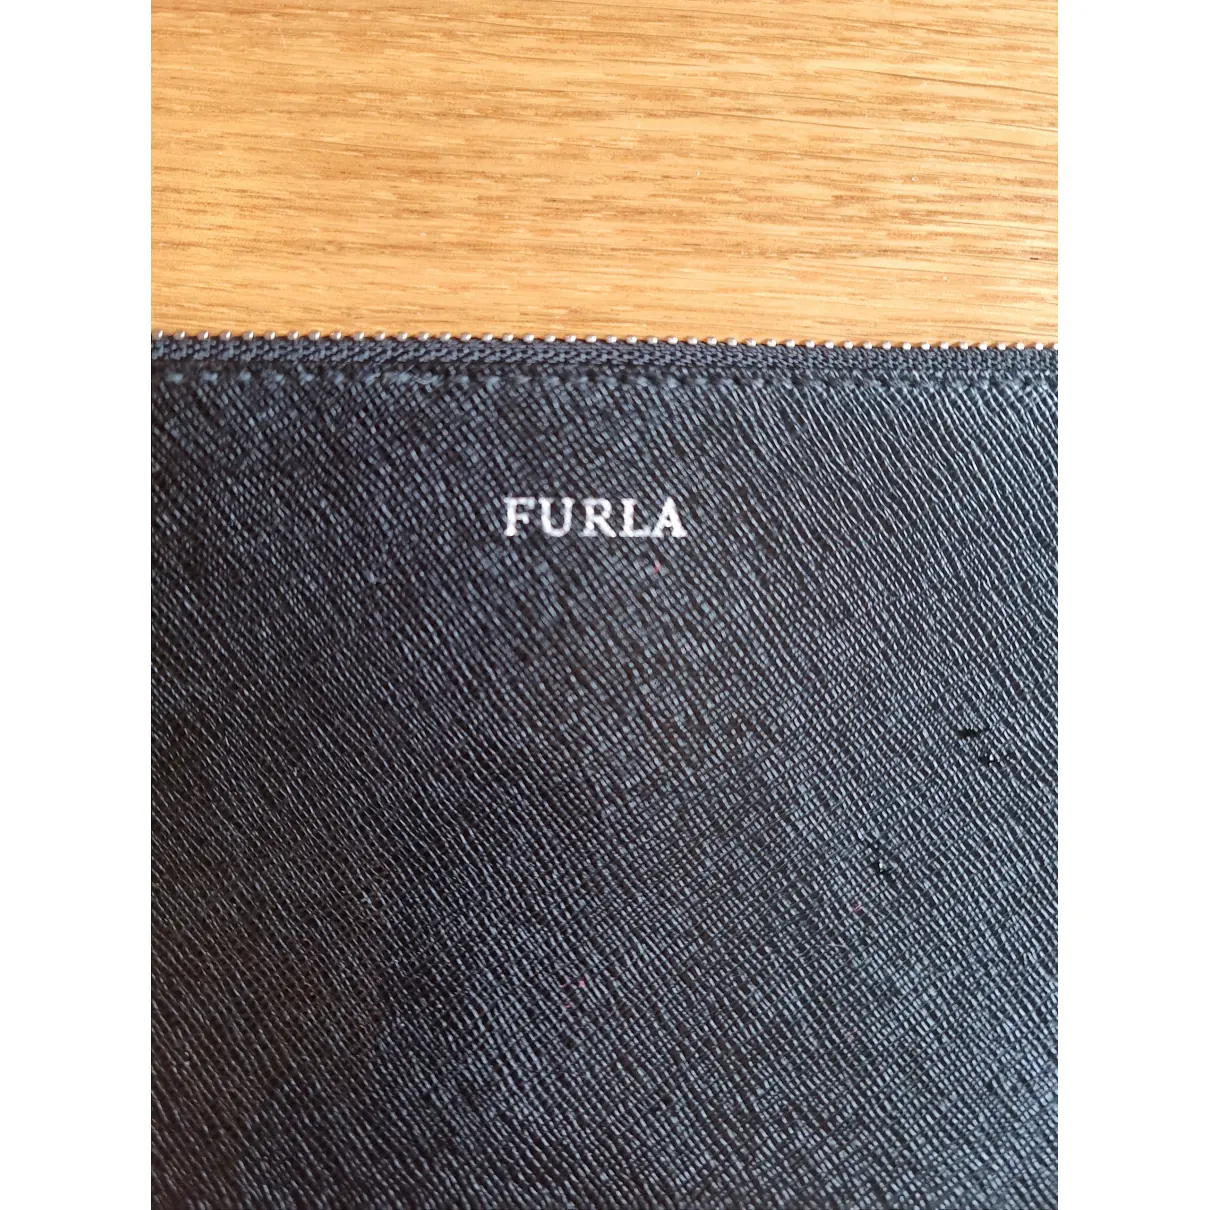 Luxury Furla Wallets Women